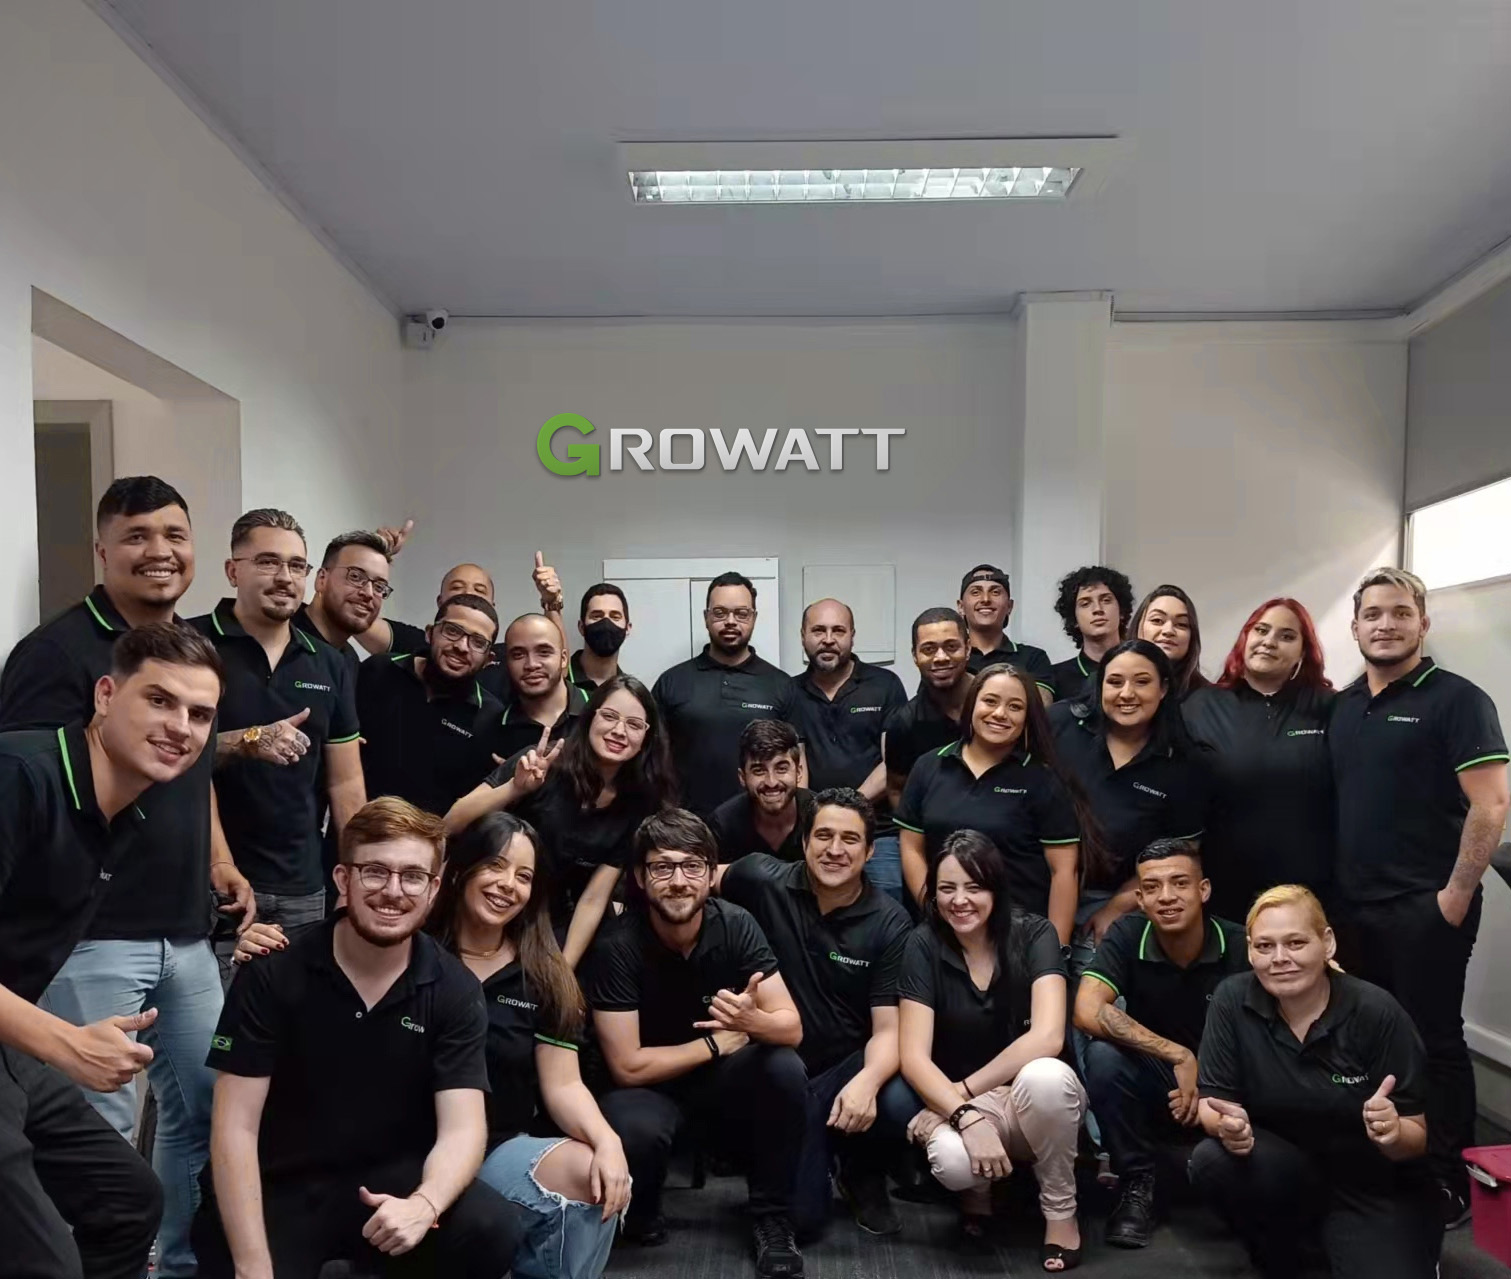 Compromisso com a qualidade: Growatt amplia suporte técnico com base em São Paulo